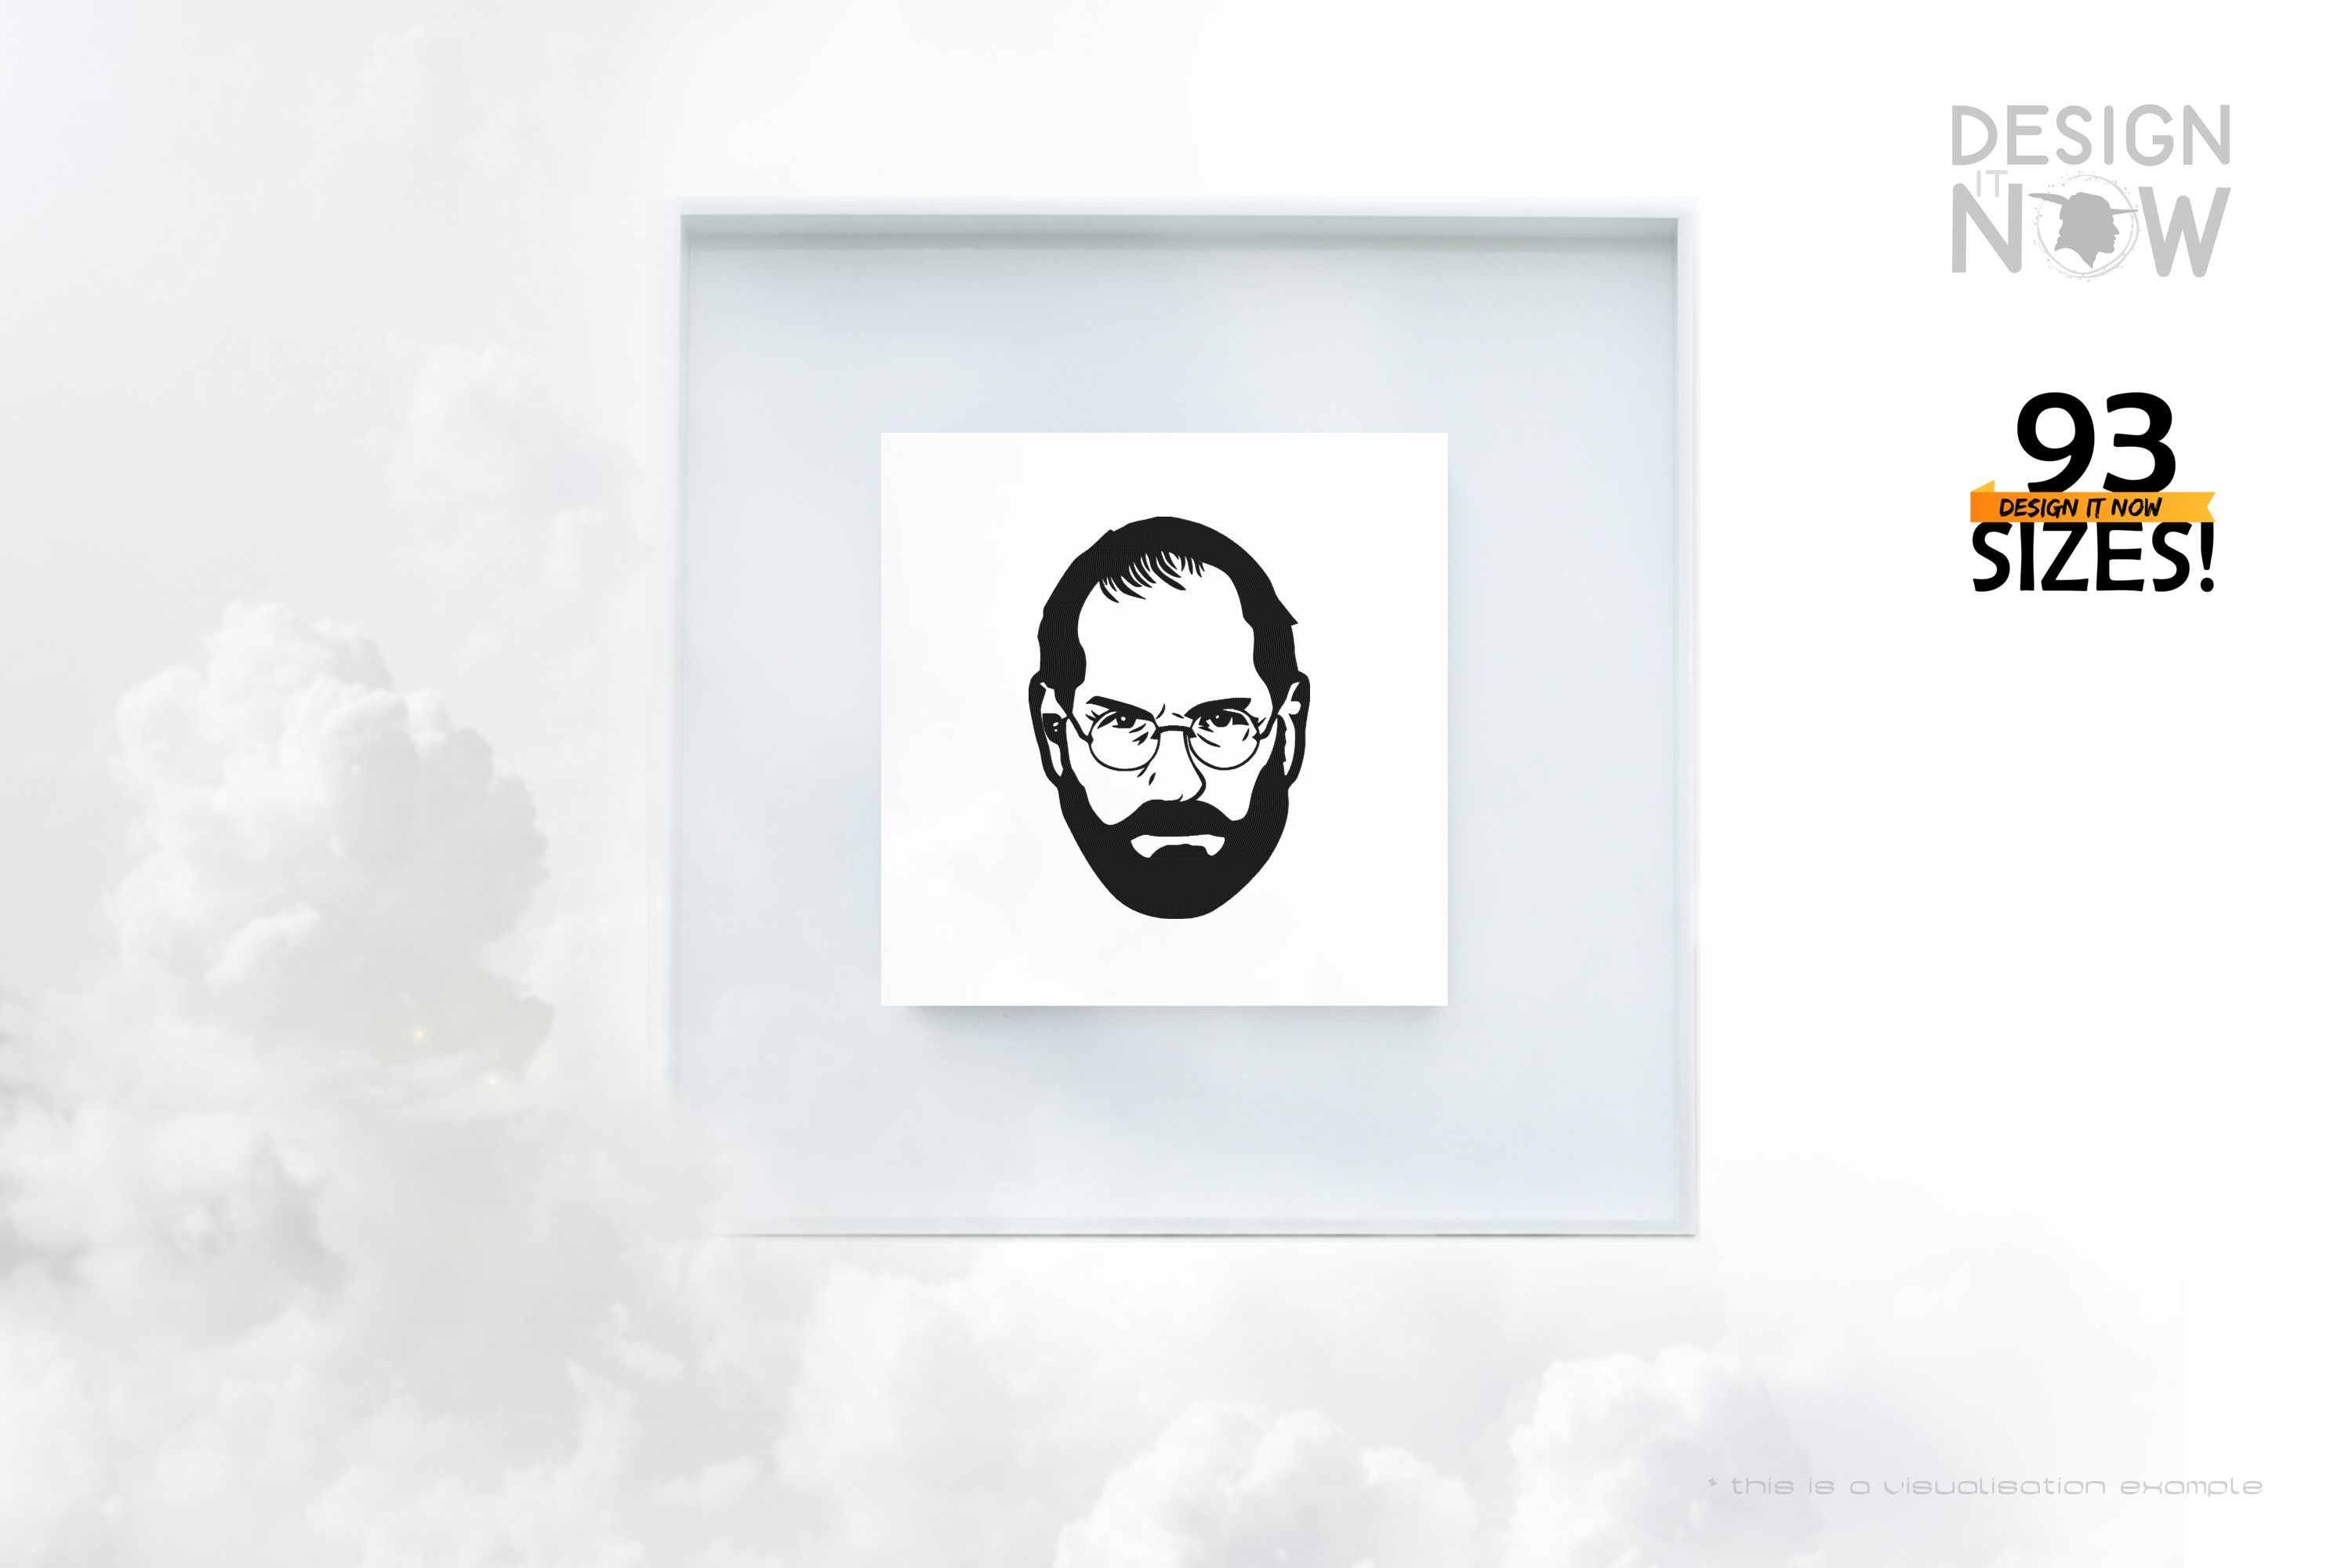 Tribute To Entrepreneur Steven Paul Jobs aka Steve Jobs I